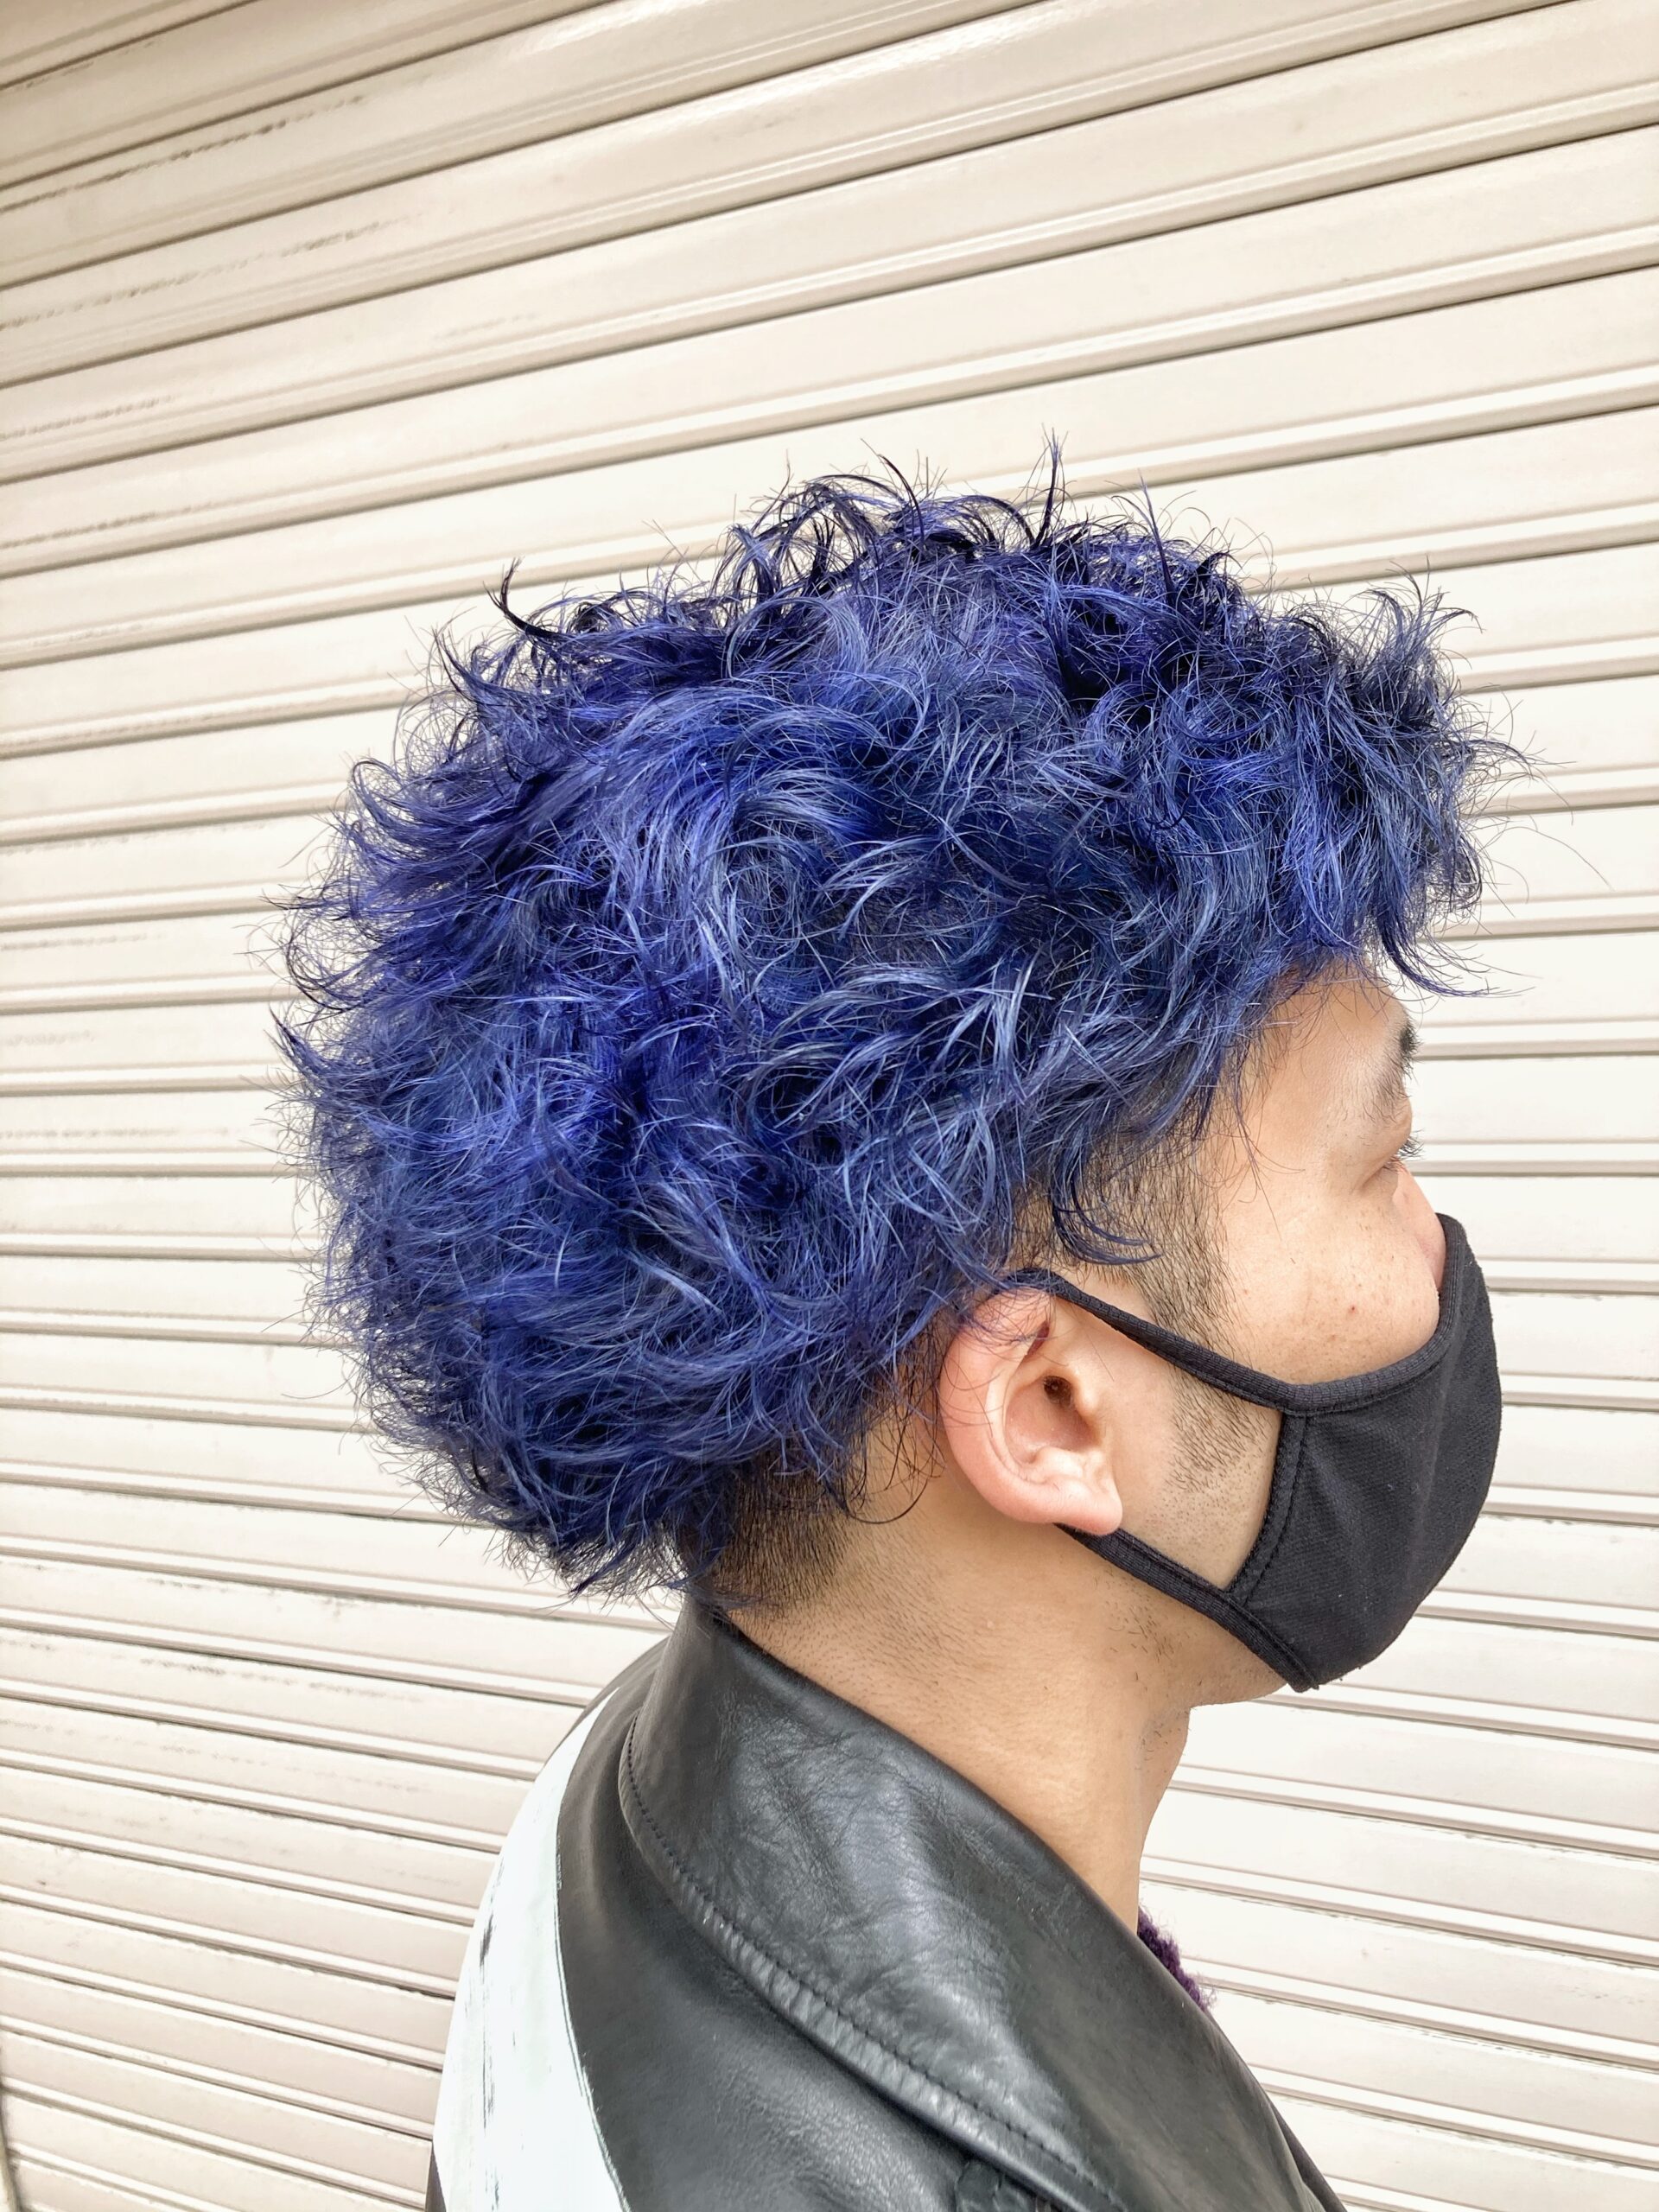 ブリーチ1回で青の髪へ 人気のメンズ青系ヘアカラーをやらないと損 カラーの申し子 福岡にあるカラーが人気の美容室